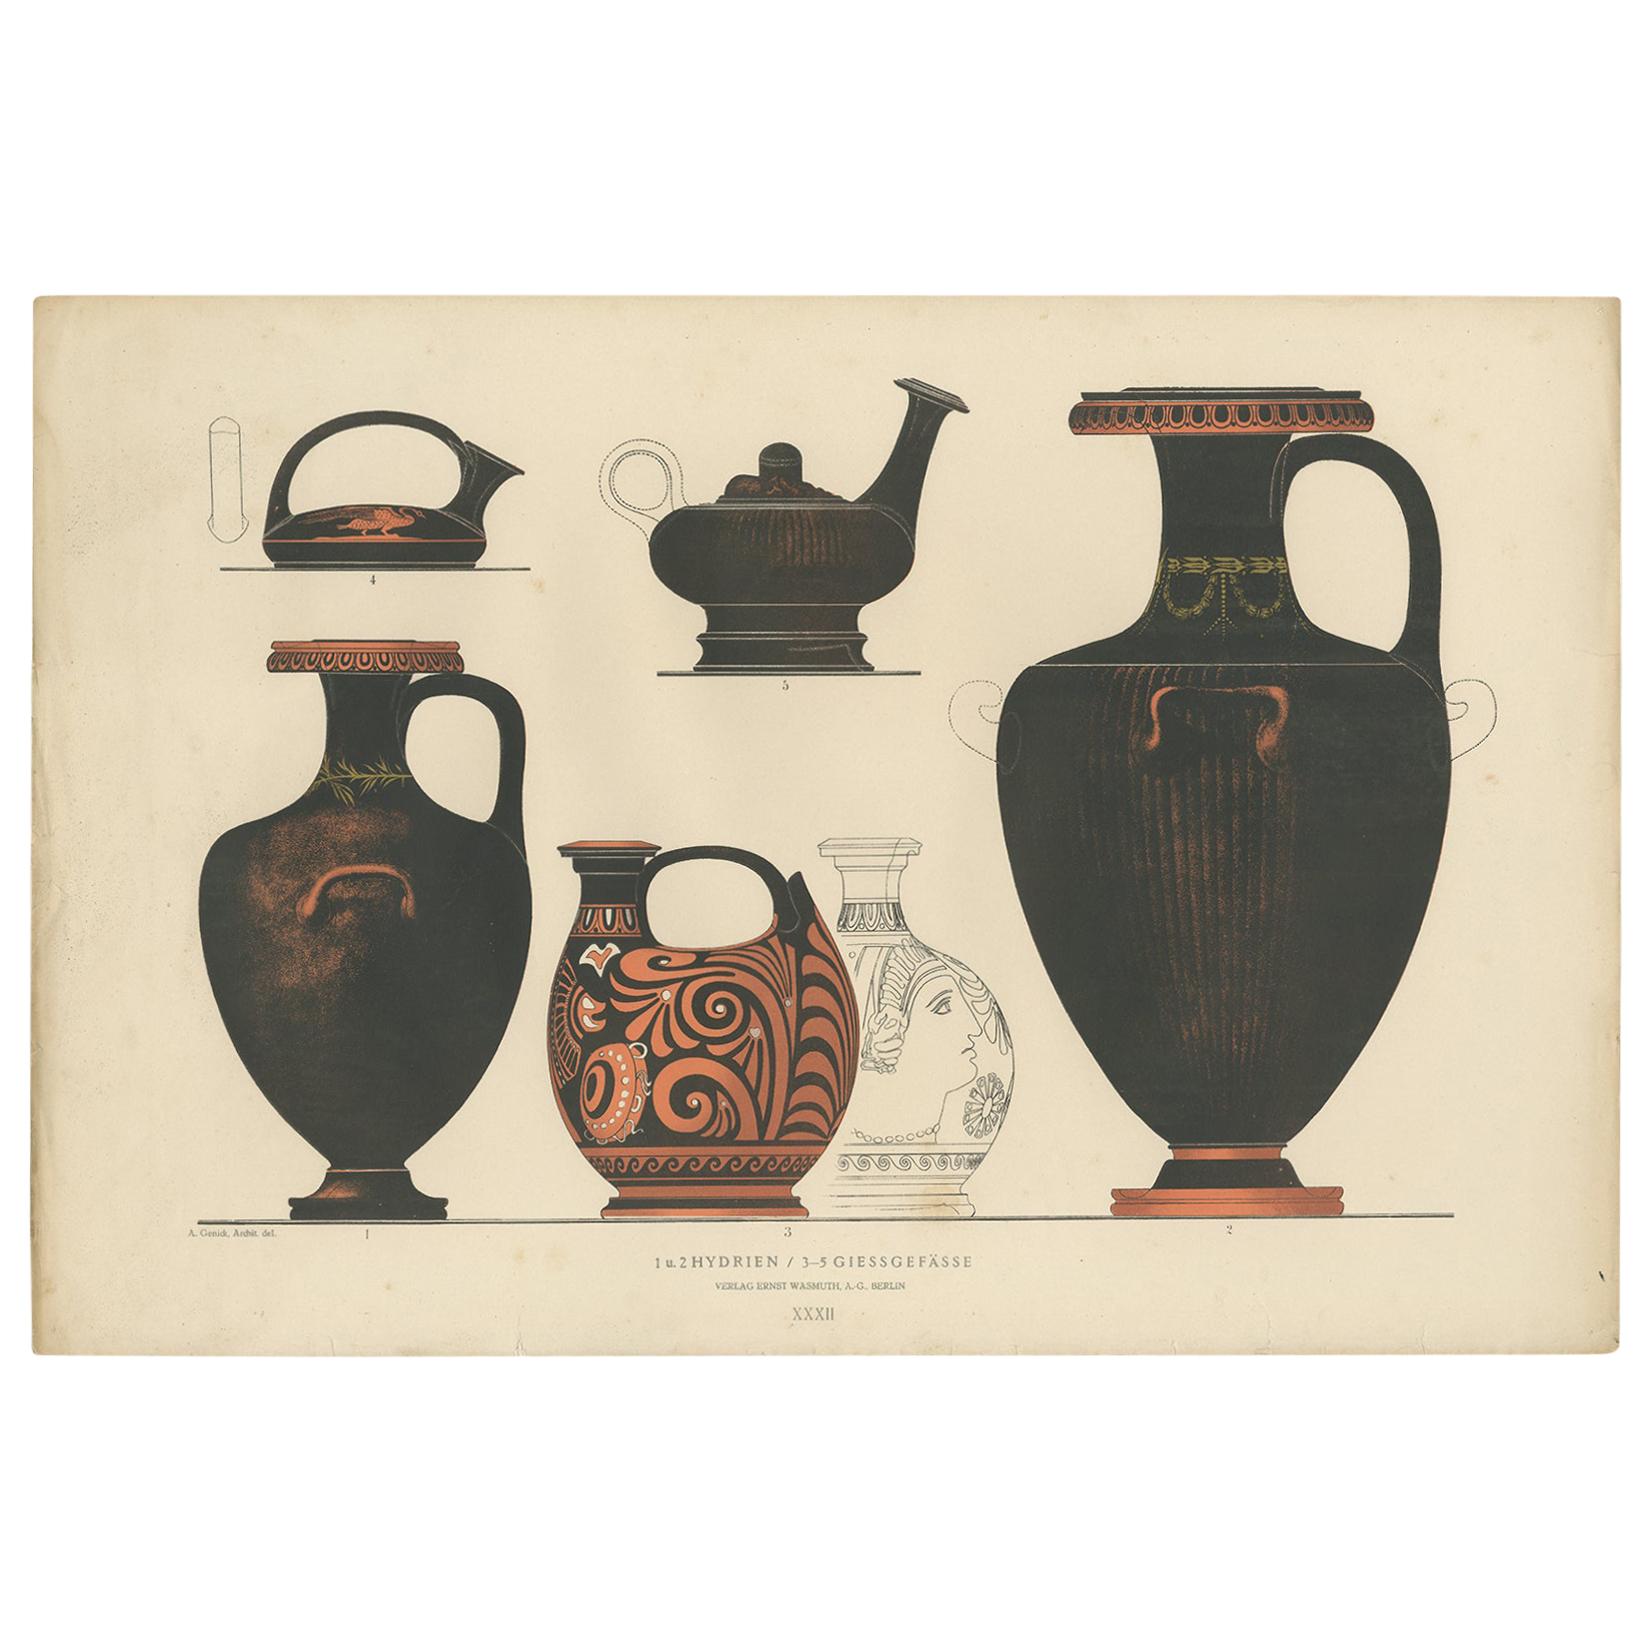 Antique Print of Greek Ceramics 'Hydrien / Giessgefässe' by Genick '1883'